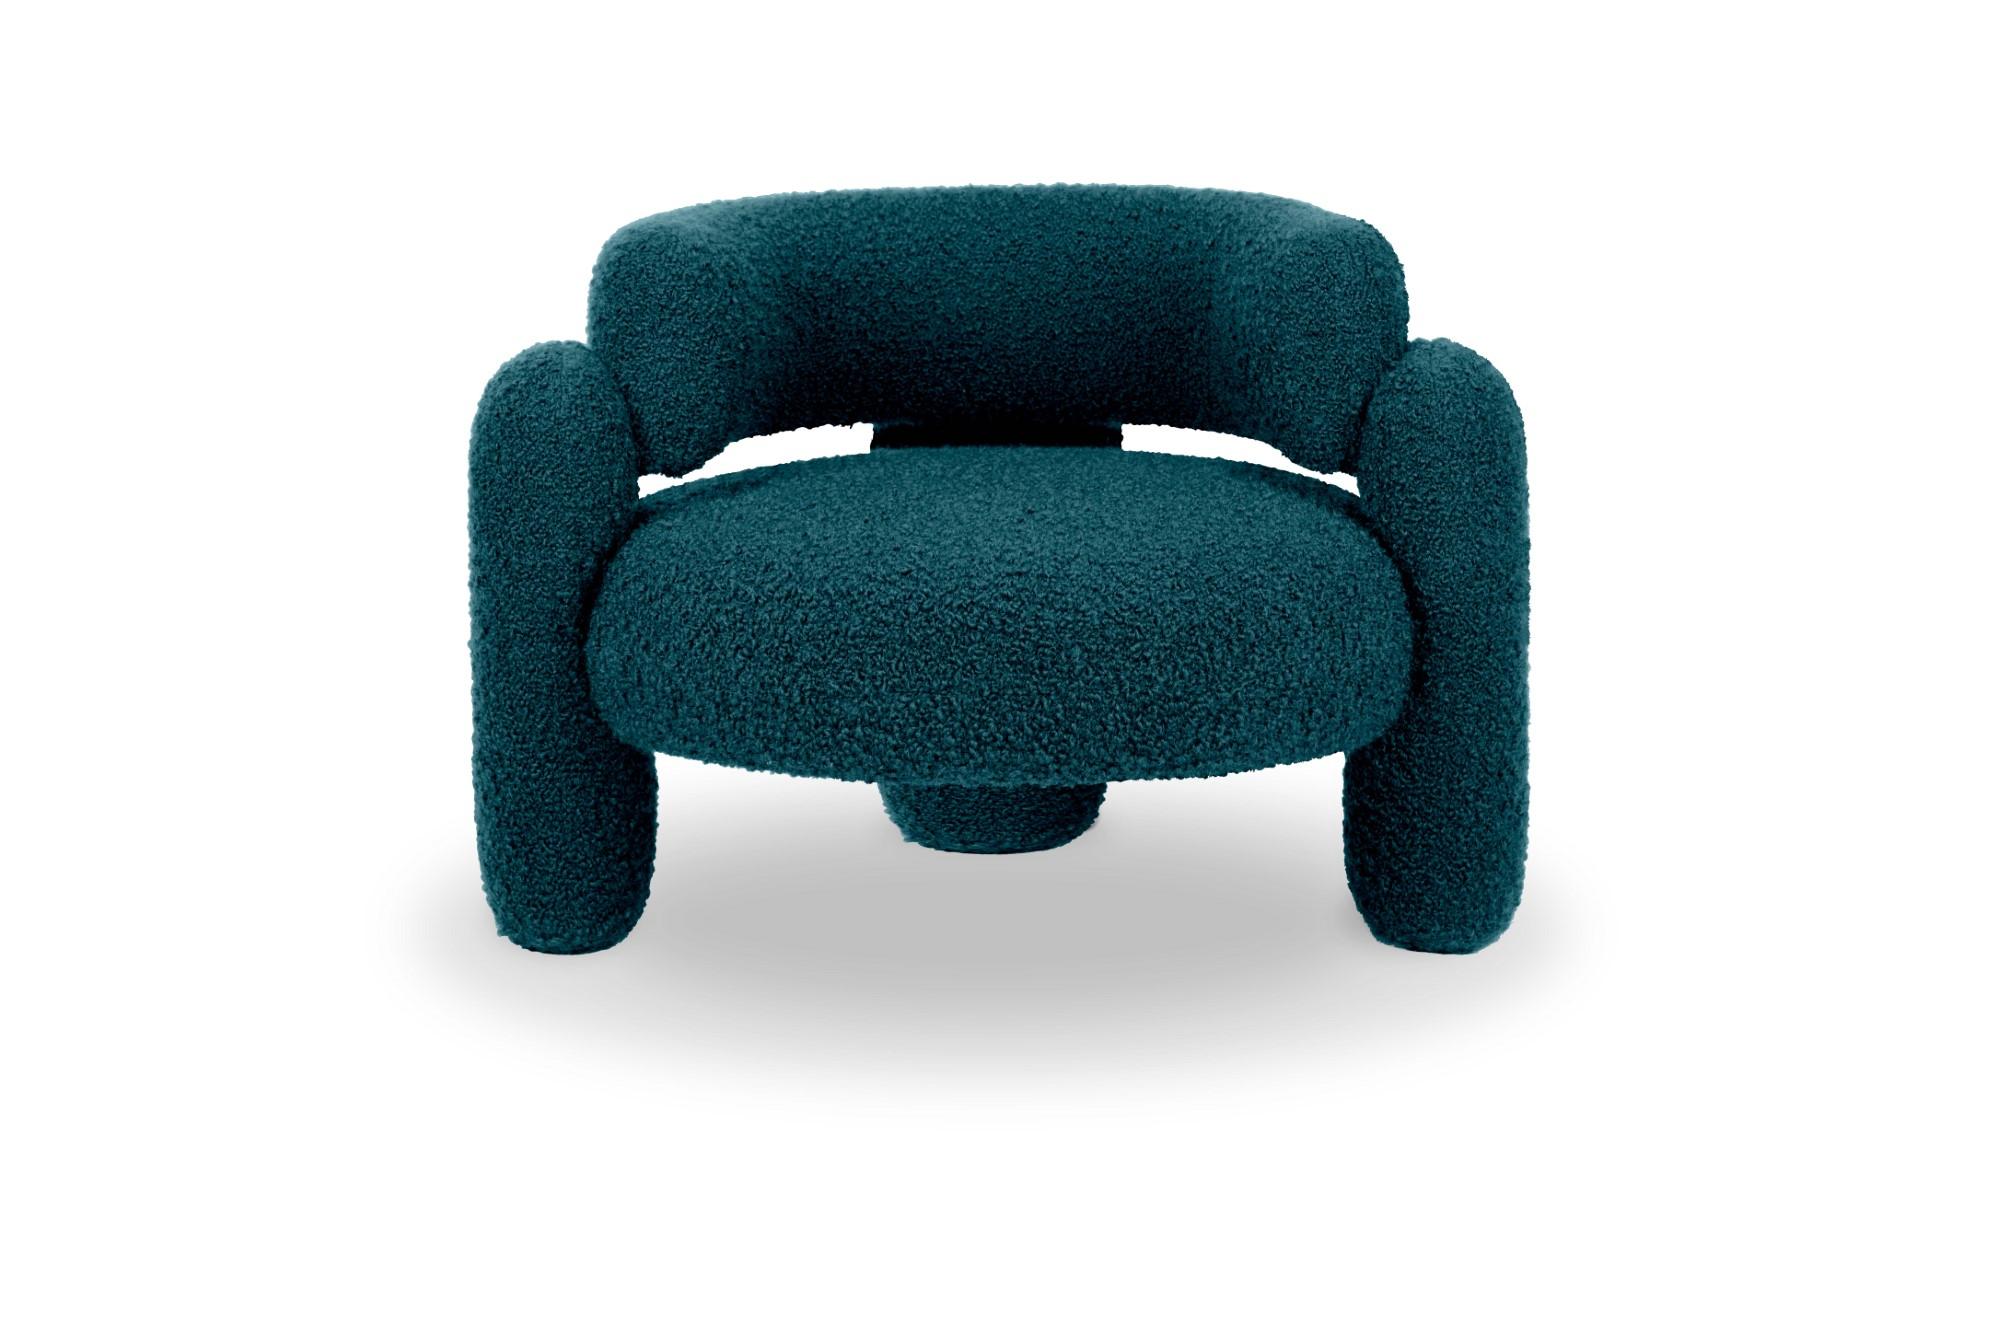 Embrace Cormo Azure Sessel von Royal Stranger
Abmessungen: B 96 x T 85 x H 68 cm.
Es sind verschiedene Farben und Ausführungen der Polsterung erhältlich. Bitte kontaktieren Sie uns.
MATERIALIEN: Polstermöbel.

Der Embrace Armchair ist eine